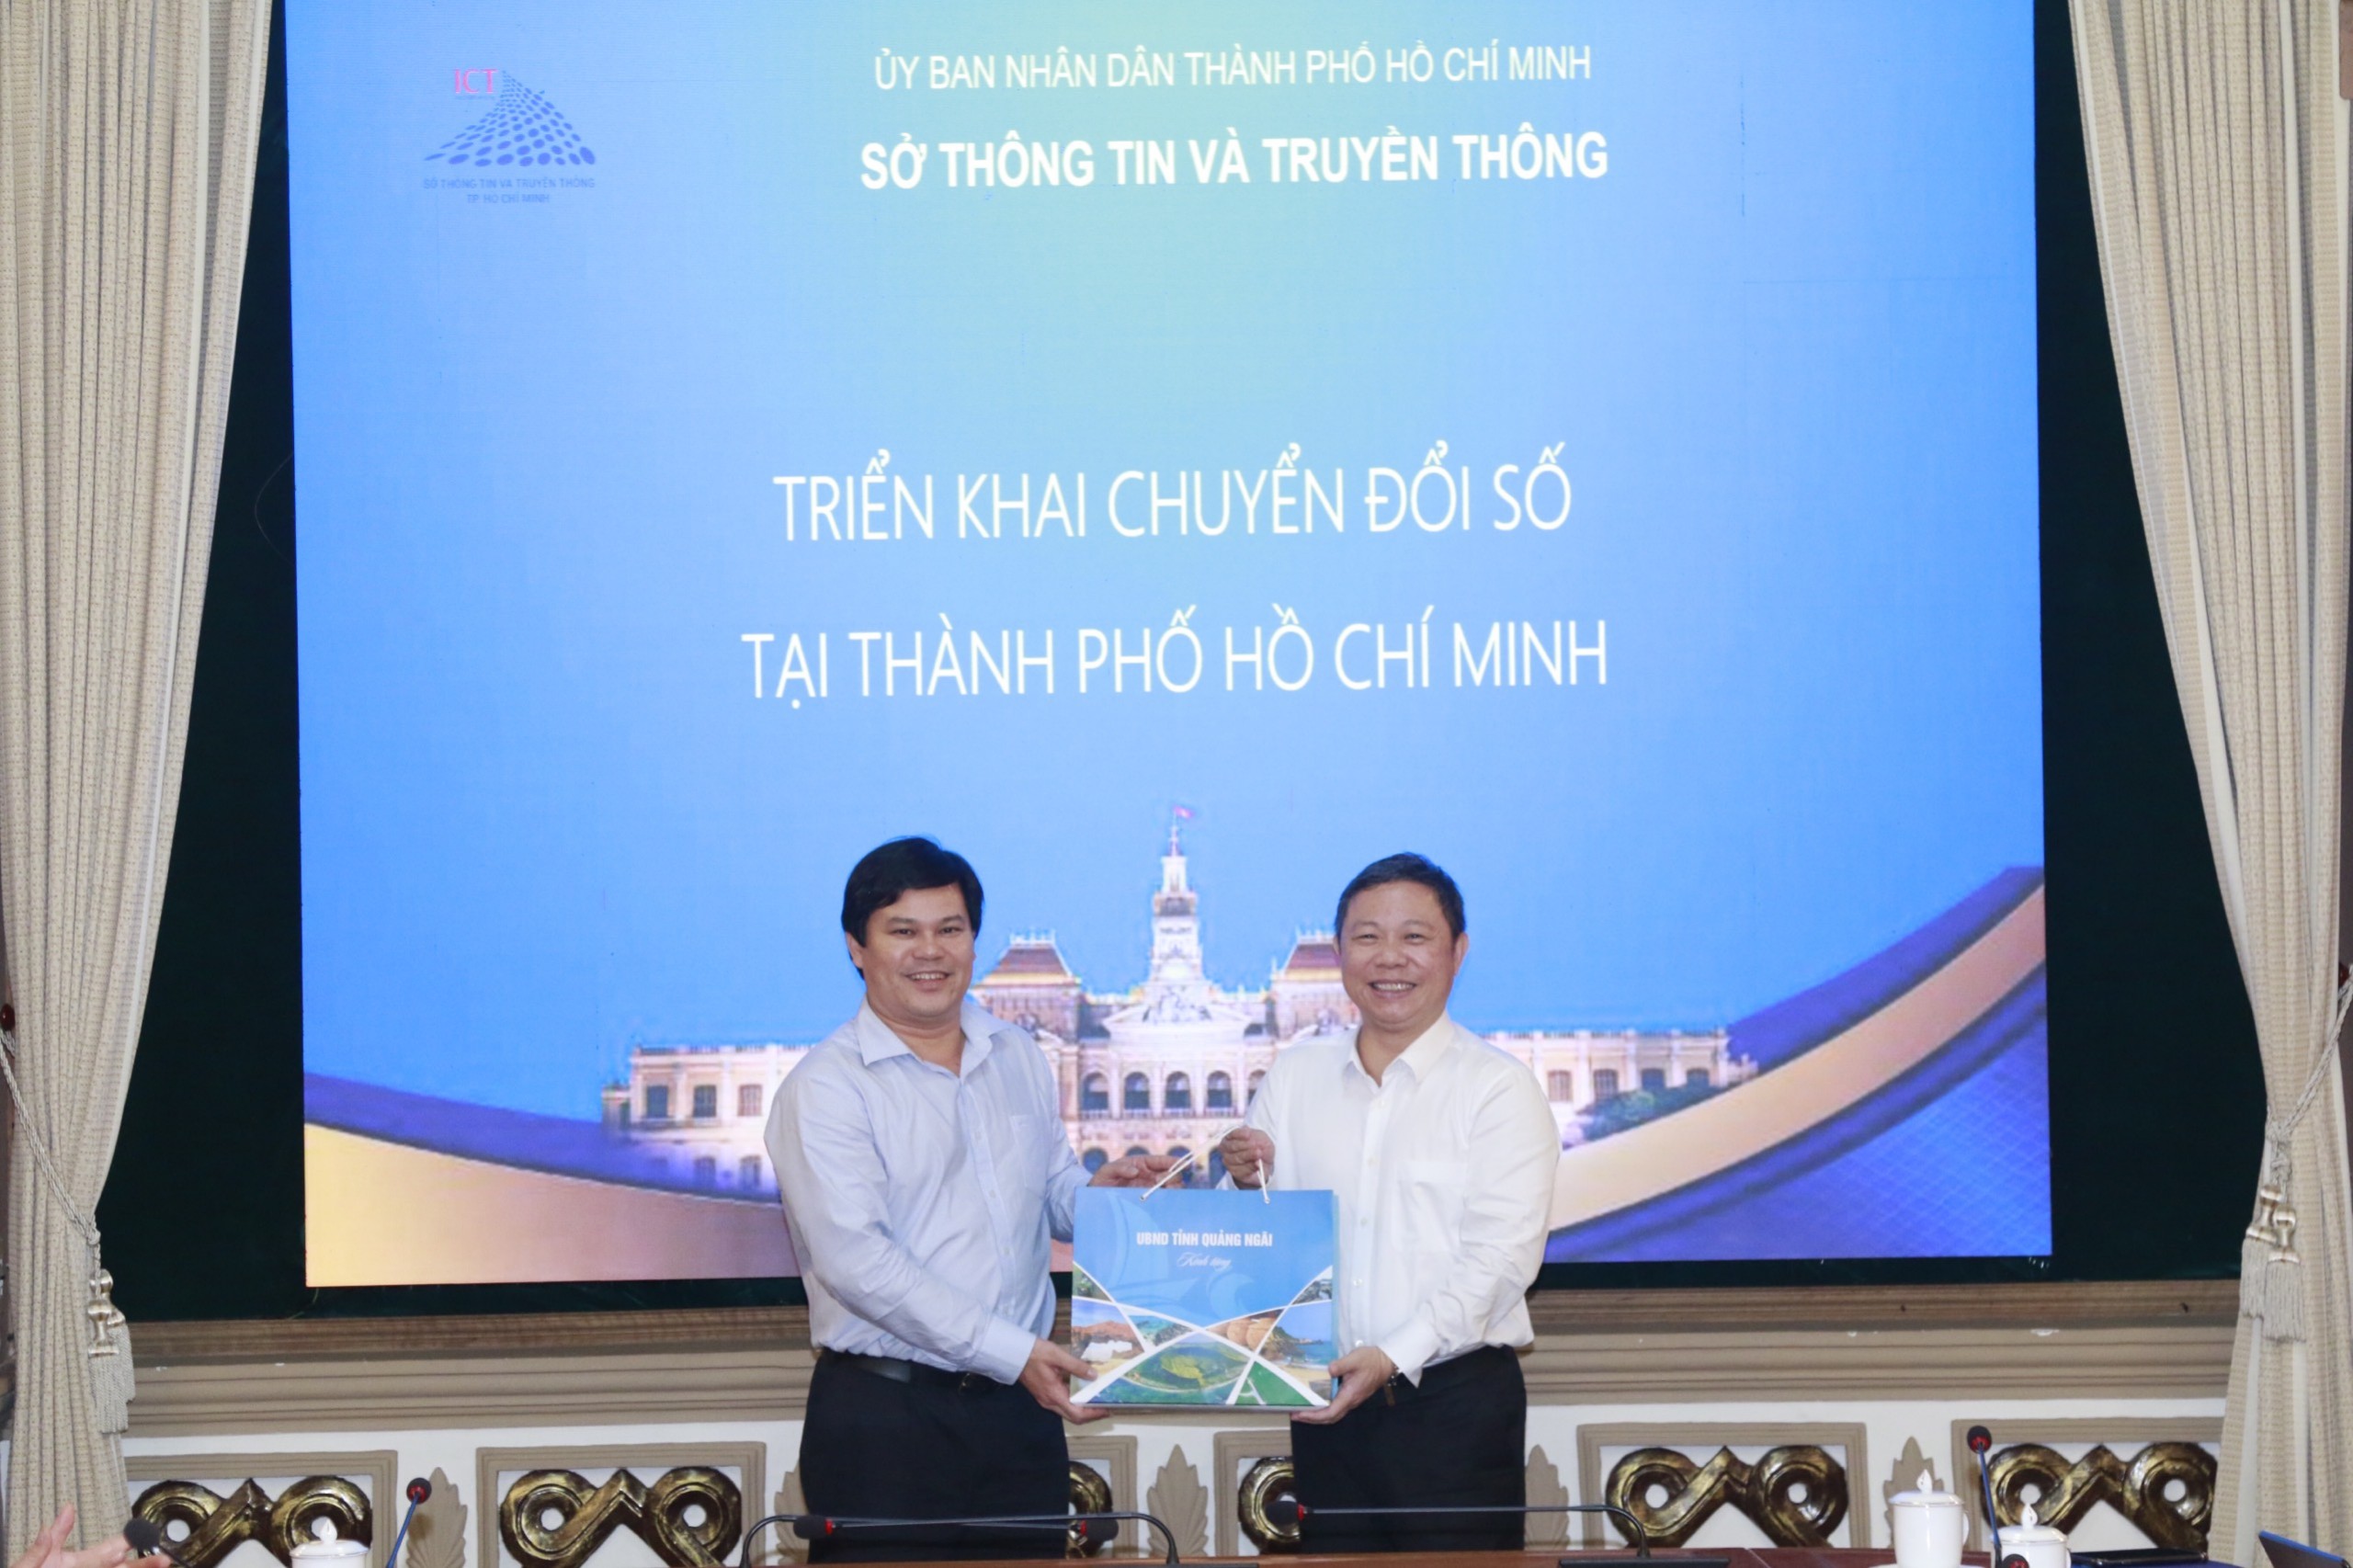 Đoàn công tác của tỉnh Quảng Ngãi học tập kinh nghiệm về chuyển đổi số tại Thành phố Hồ Chí Minh